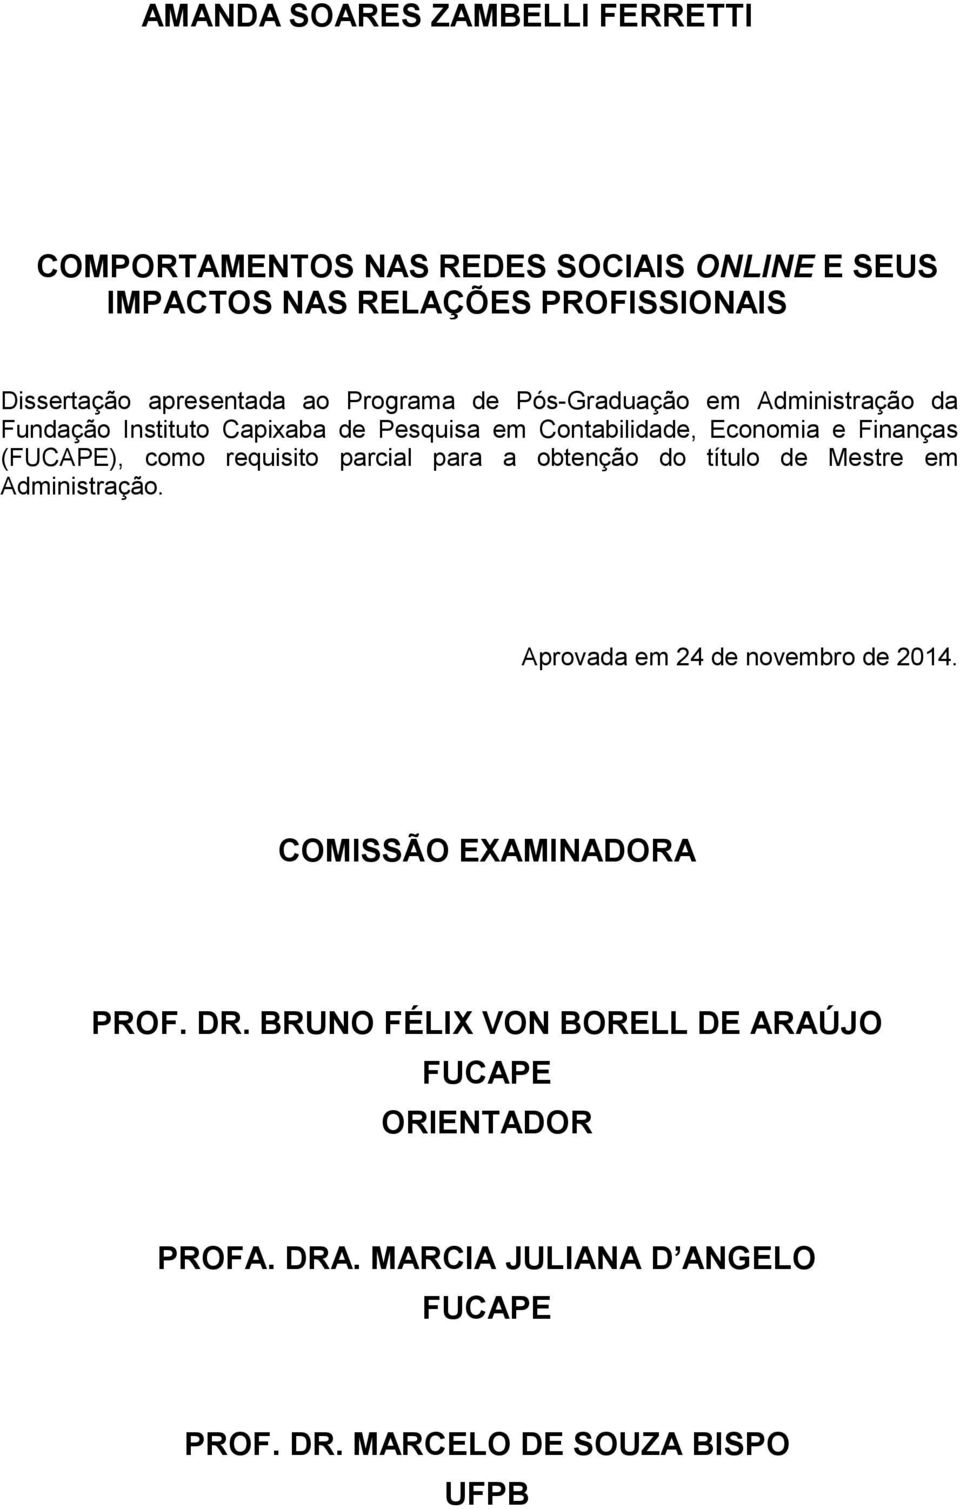 Finanças (FUCAPE), como requisito parcial para a obtenção do título de Mestre em Administração. Aprovada em 24 de novembro de 2014.